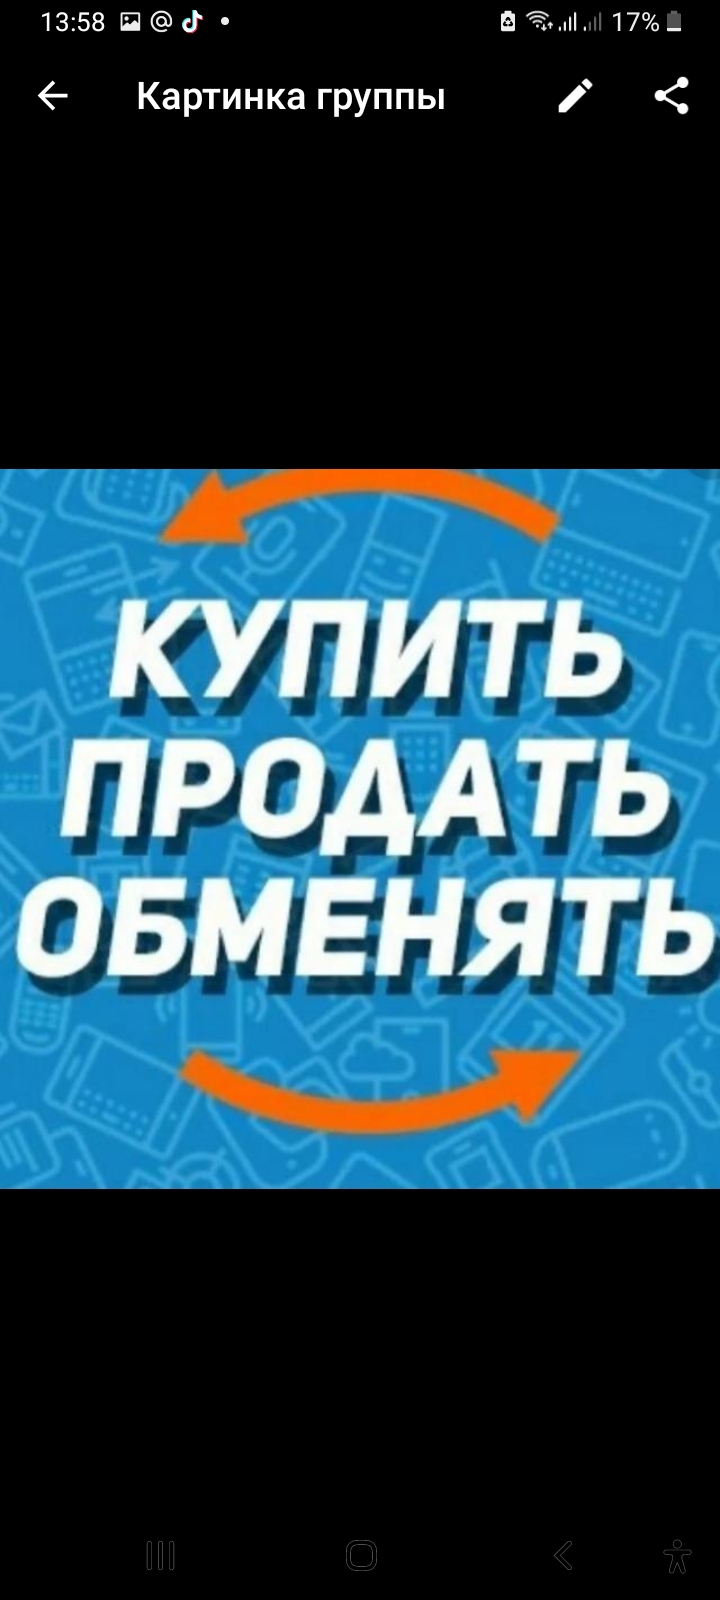 Логотип группы Купить, обменять, продать.